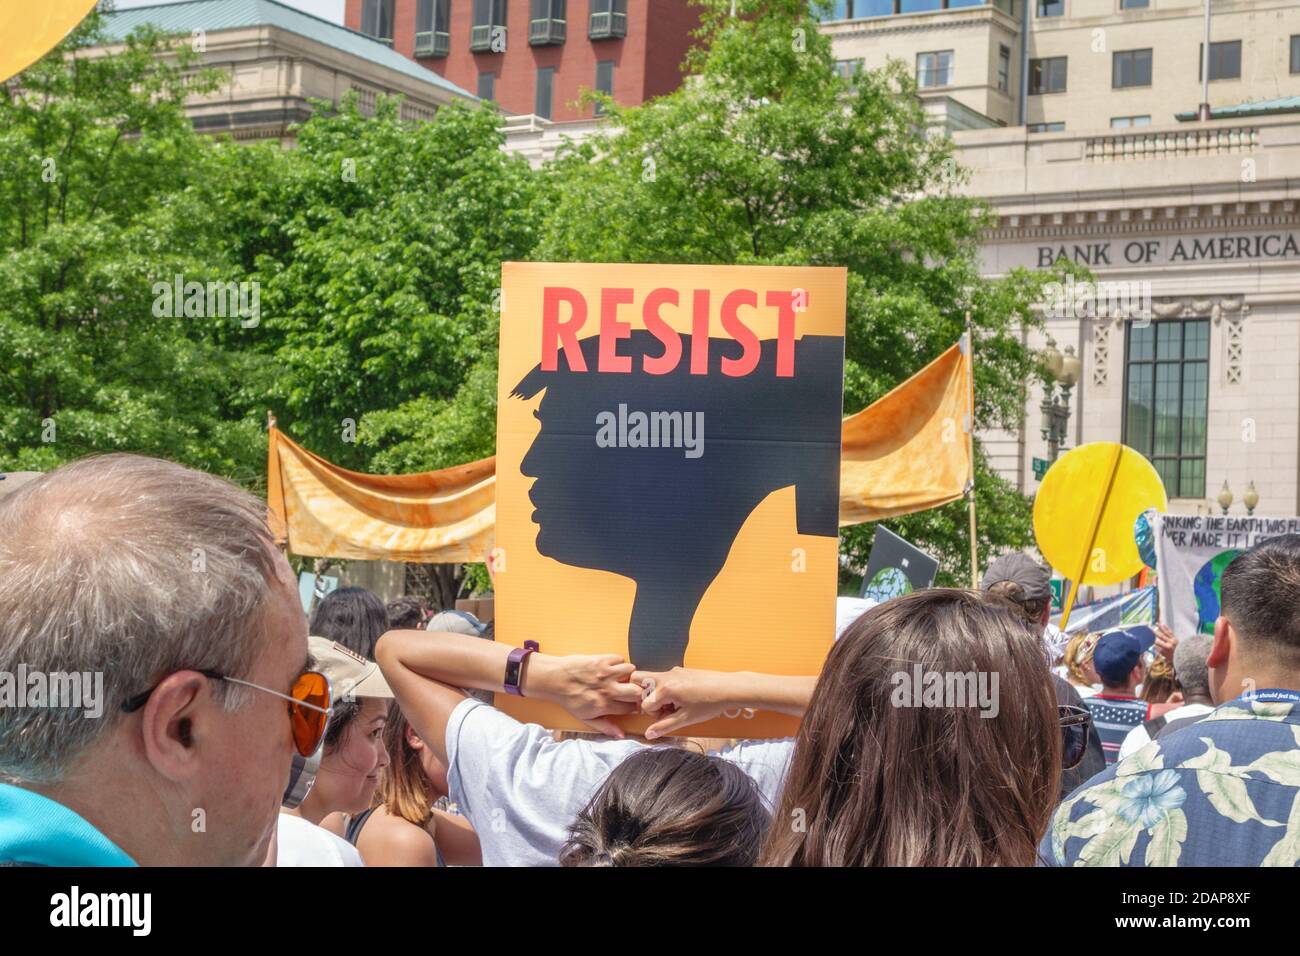 Les manifestants tiennent un panneau indiquant « Resist » lors d'une manifestation à Washington, DC, États-Unis. Banque D'Images